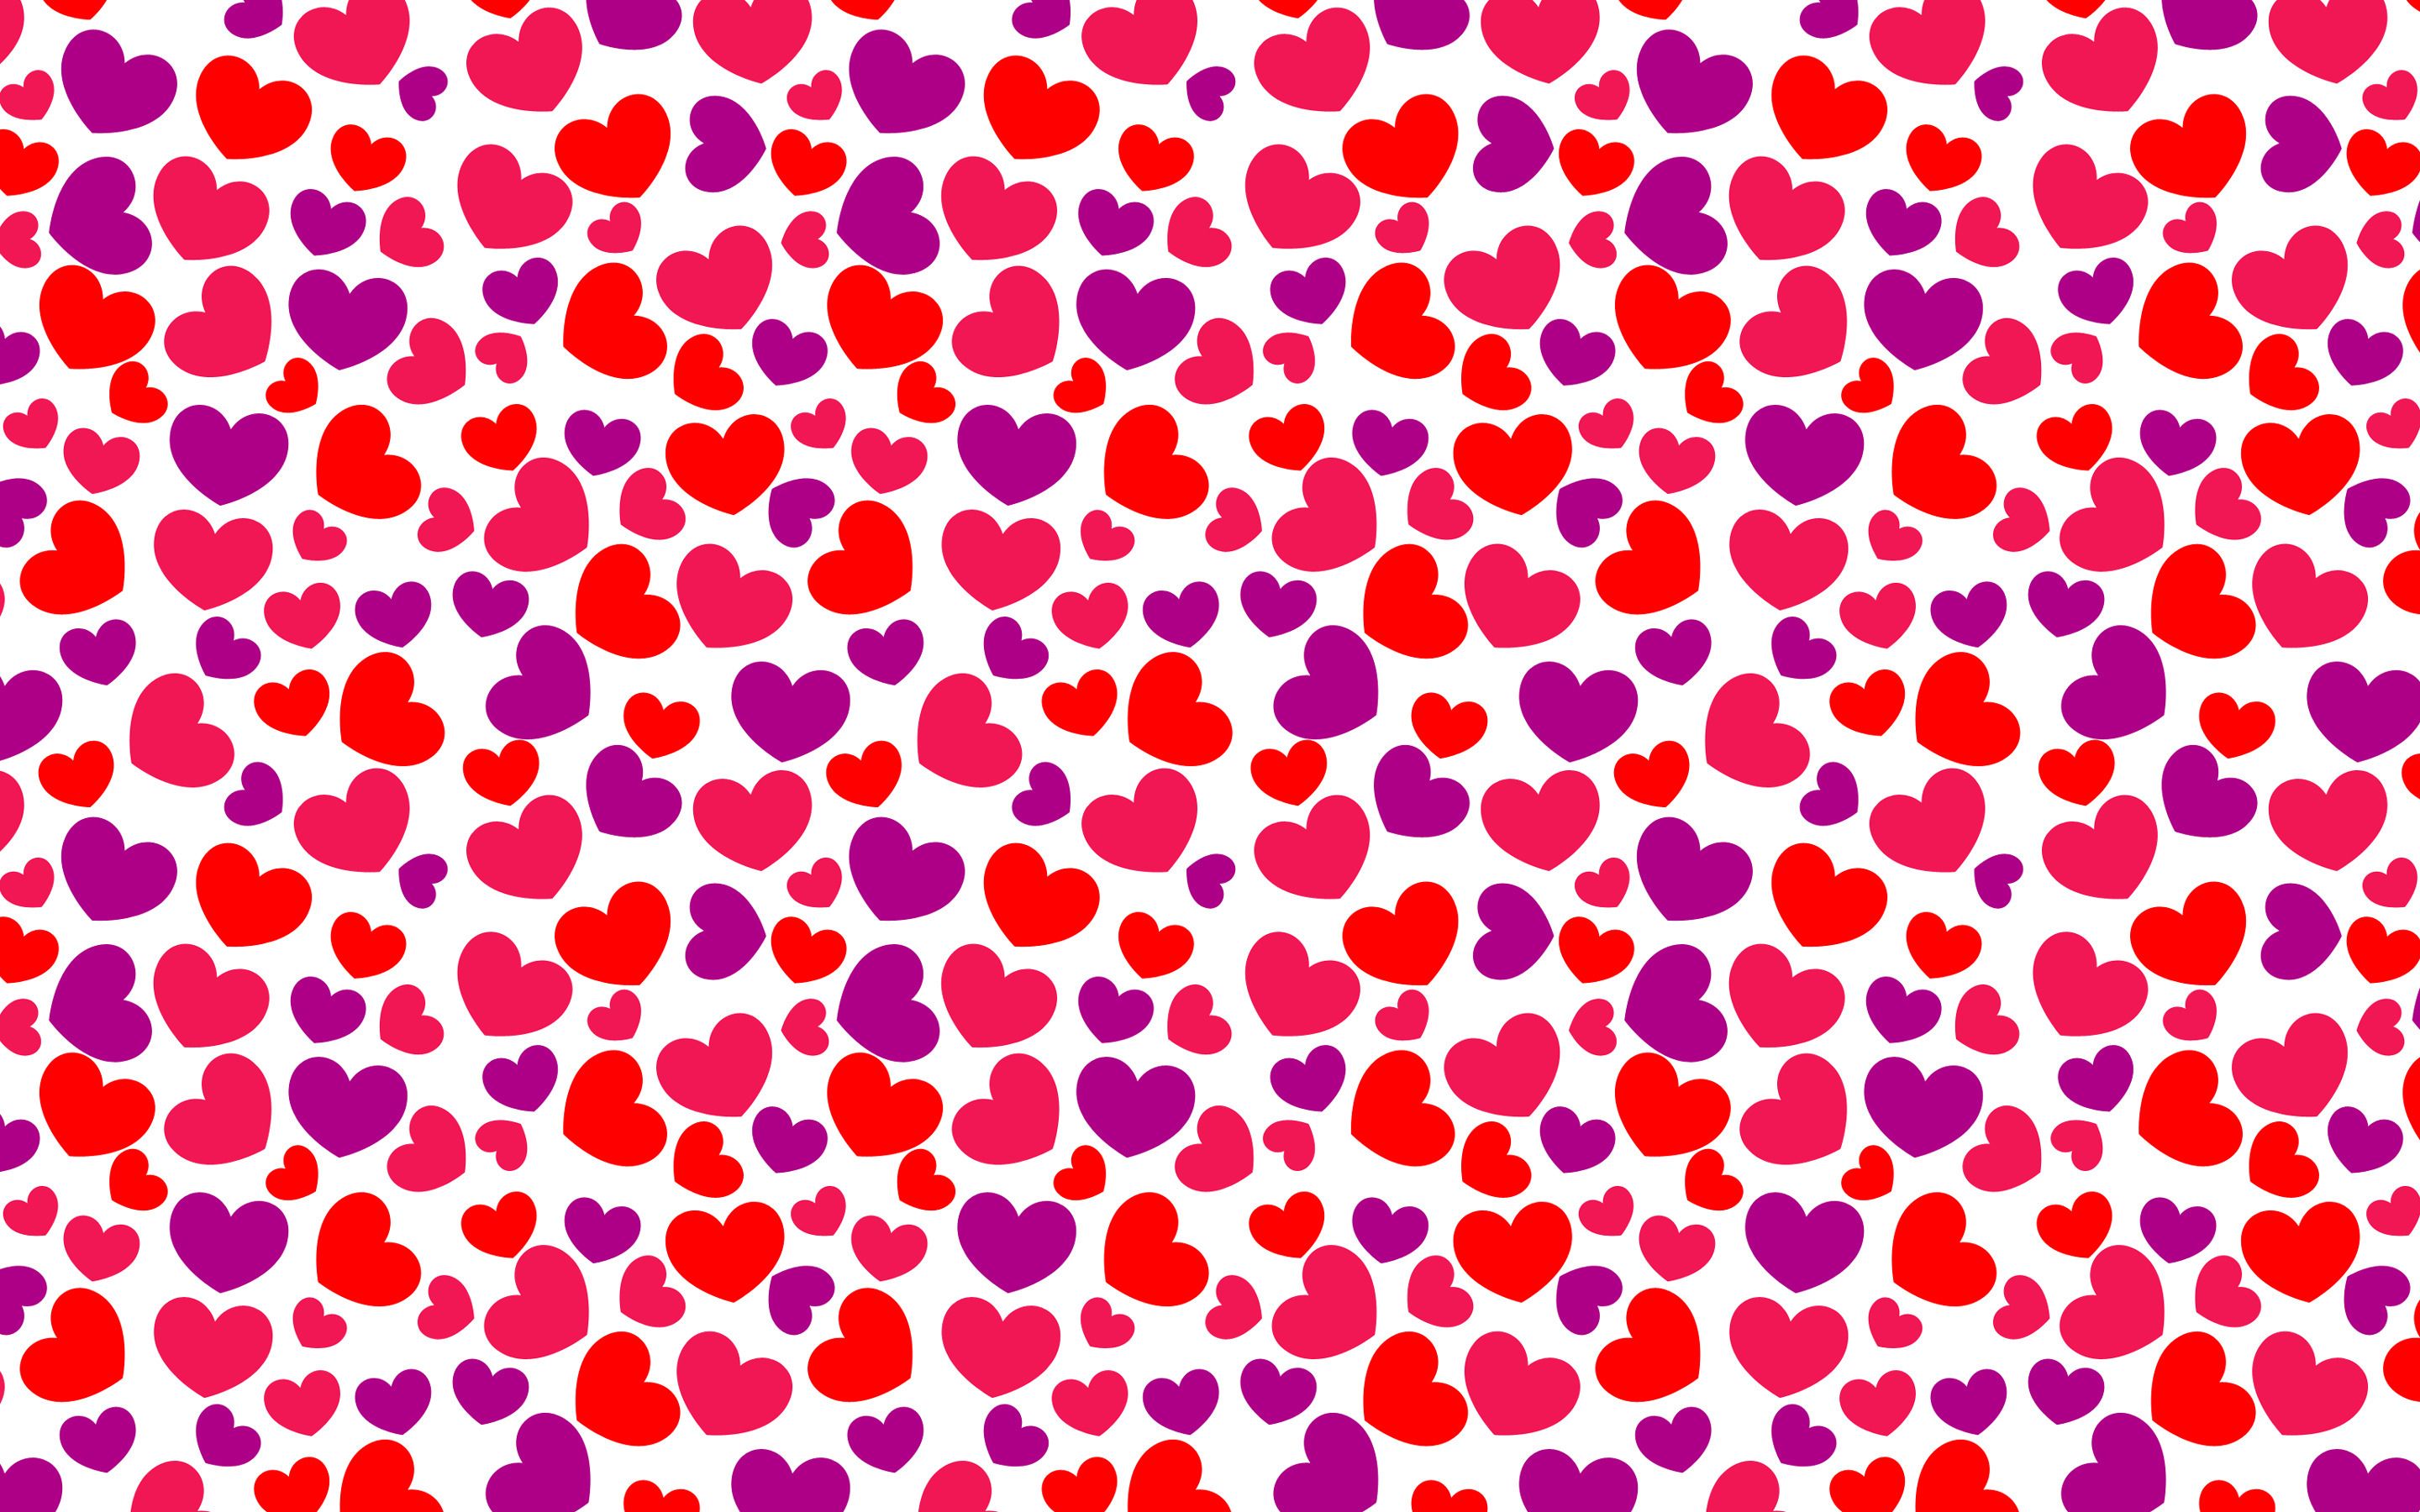 Fondos de corazones, descargar imagen de un estilo abstracto corazones hd